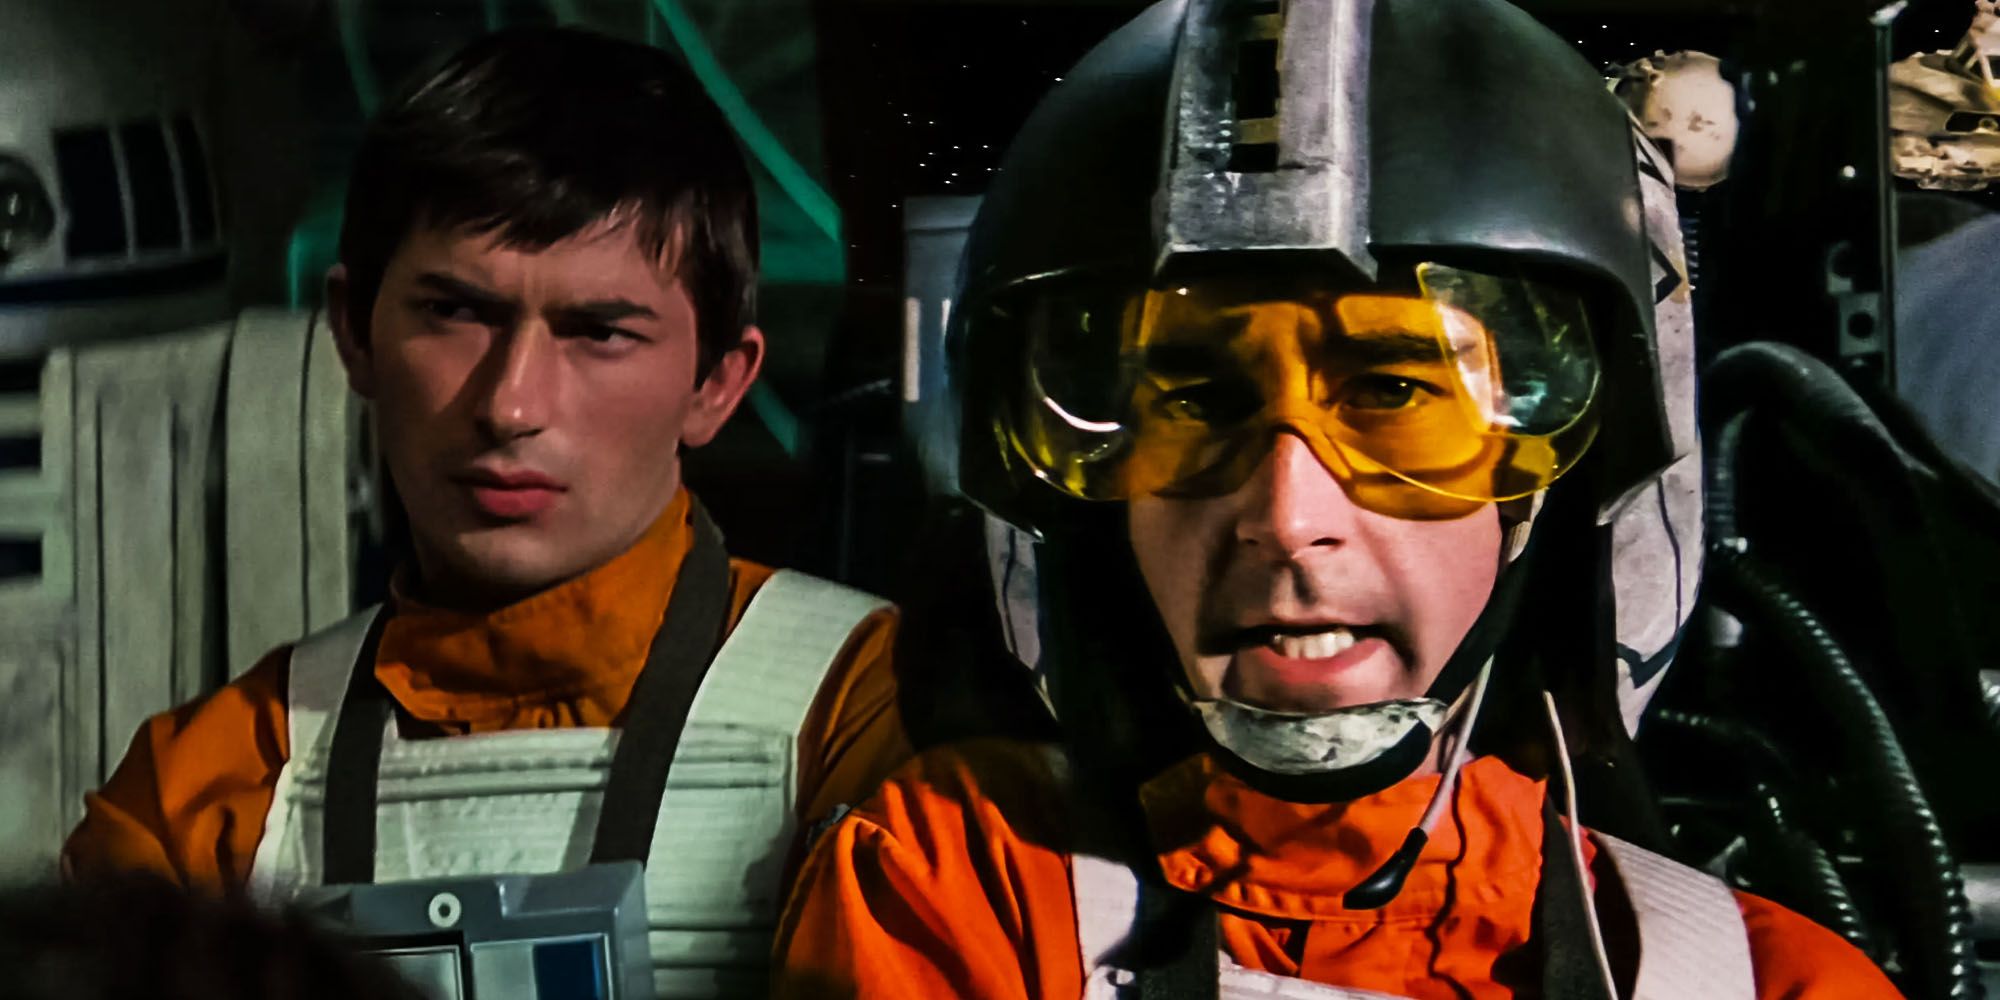 Star Wars finalmente arregló e hizo Canon “Fake Wedge” 40 años después